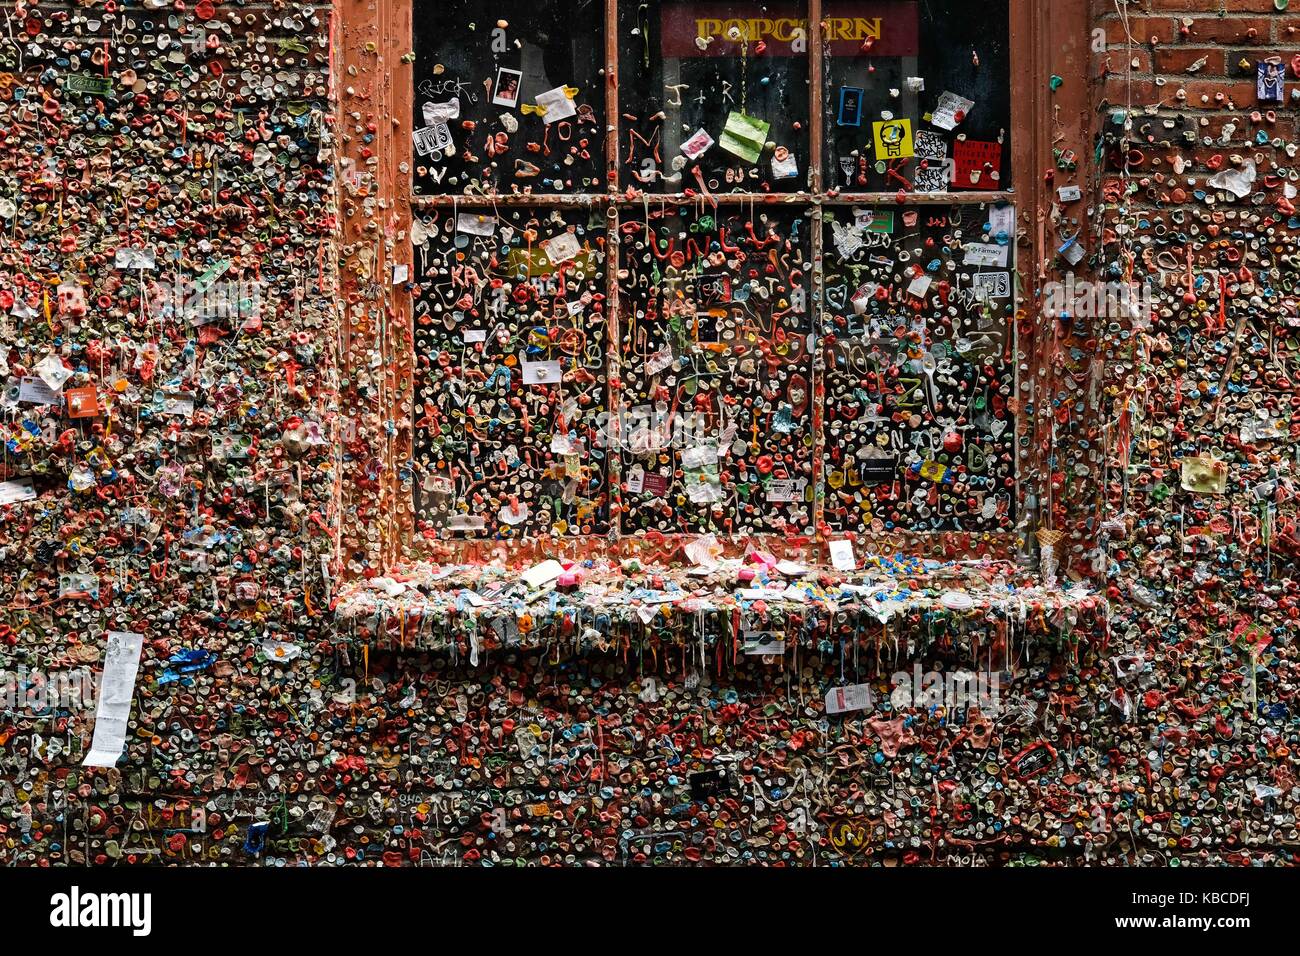 Der Gummi an der Wand, die Wand verwendet in Kaugummi bedeckt, in einer Gasse in der Innenstadt von Seattle, Washington, USA. Stockfoto